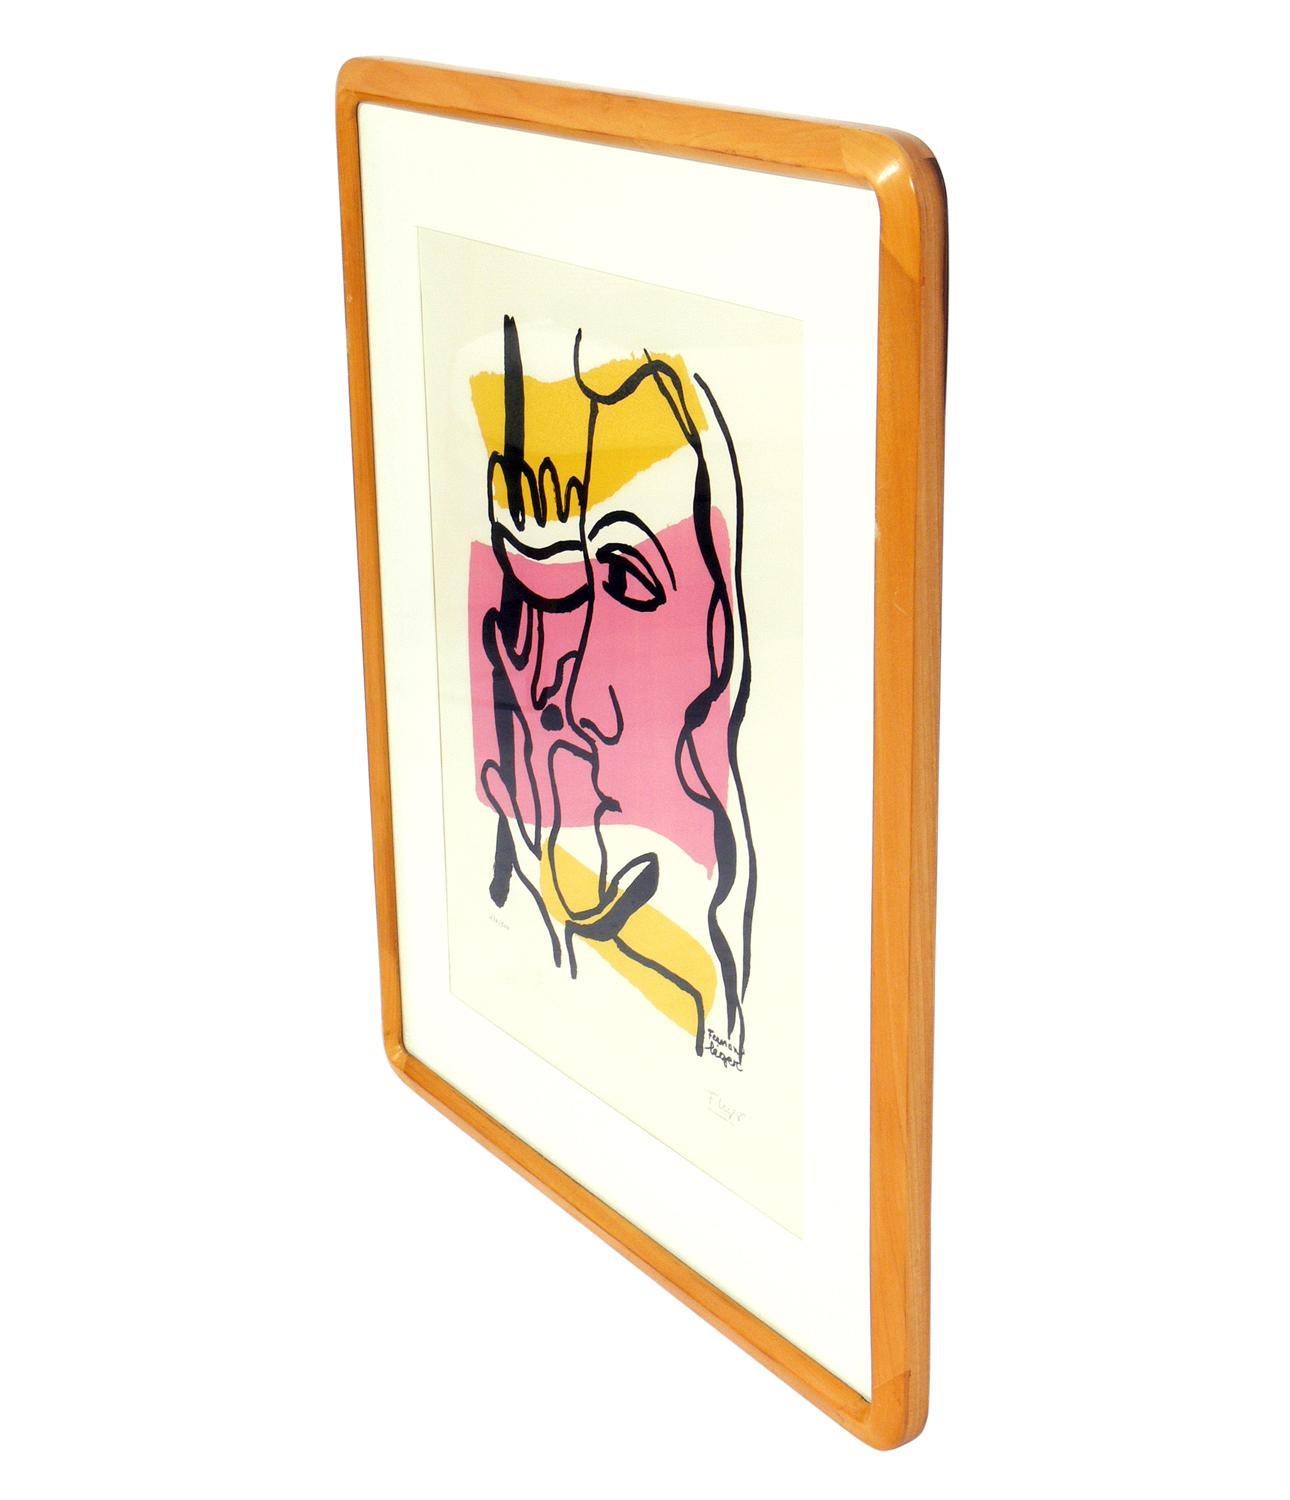 Pochoir abstrait en couleurs d'après Fernand Léger, signé et numéroté 120 de l'édition limitée à 500 publiée par le Musée Fernand Léger, Biot, France. La taille indiquée ci-dessous est celle du cadre.